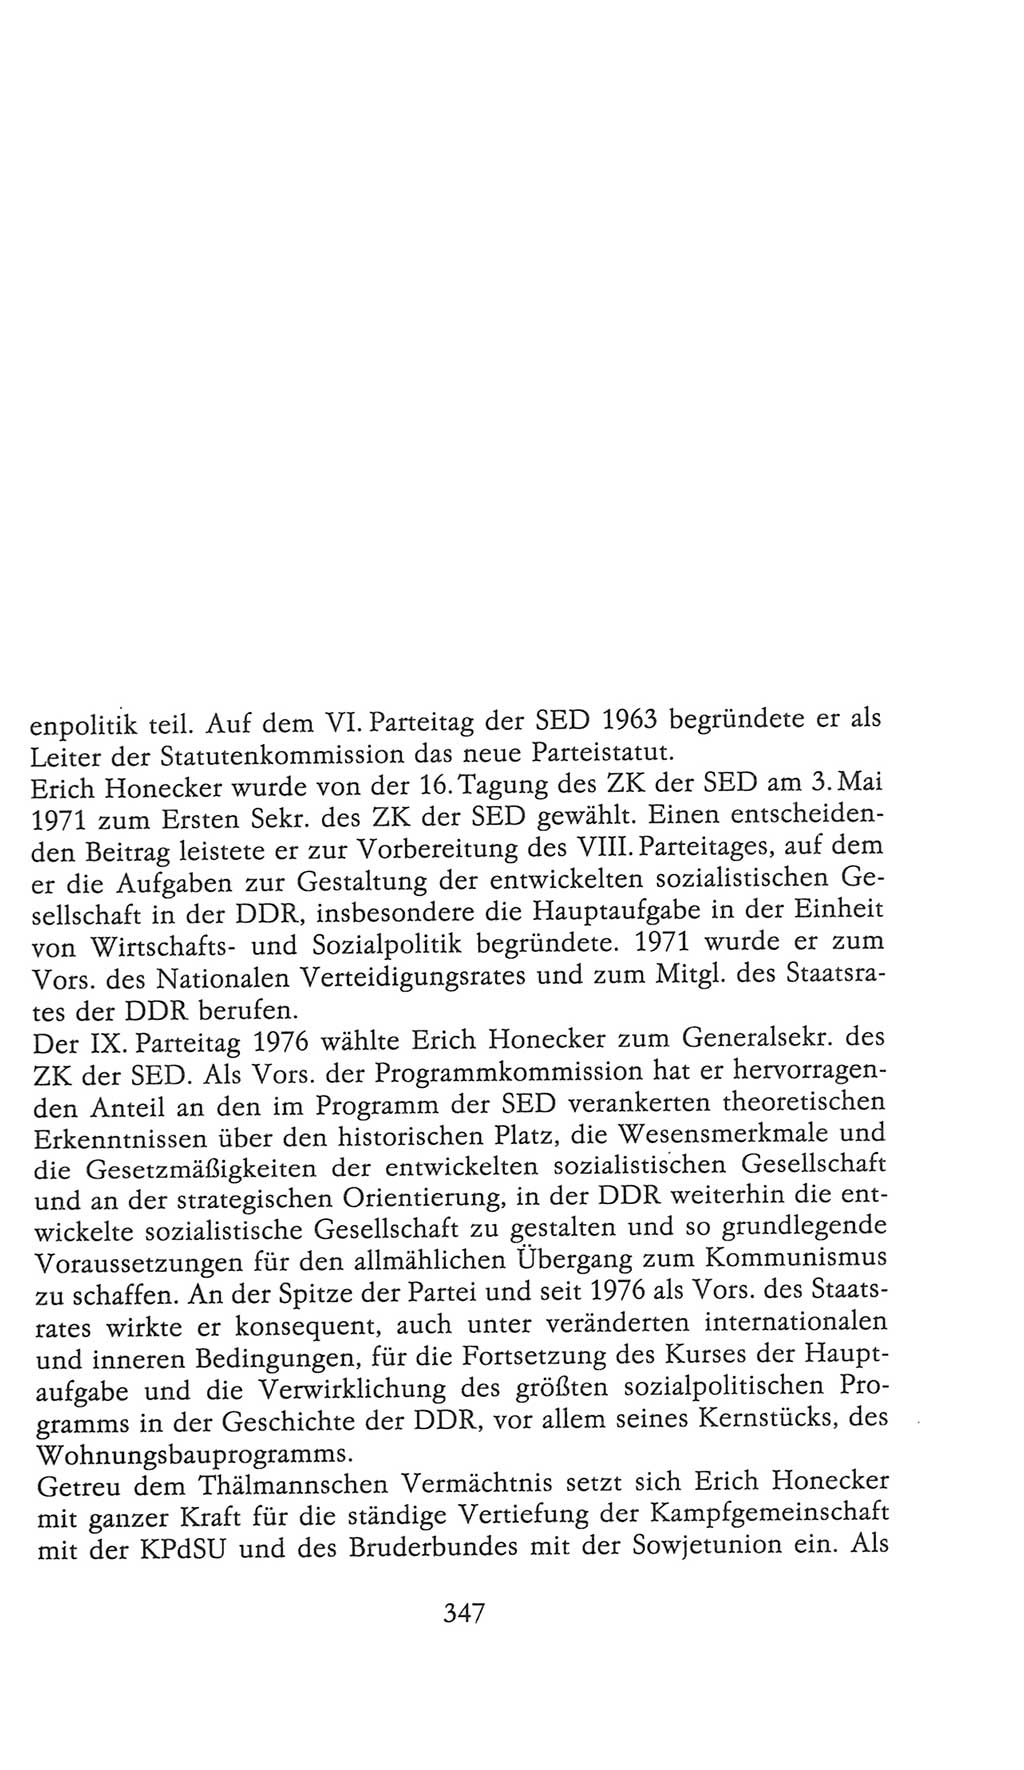 Volkskammer (VK) der Deutschen Demokratischen Republik (DDR), 9. Wahlperiode 1986-1990, Seite 347 (VK. DDR 9. WP. 1986-1990, S. 347)